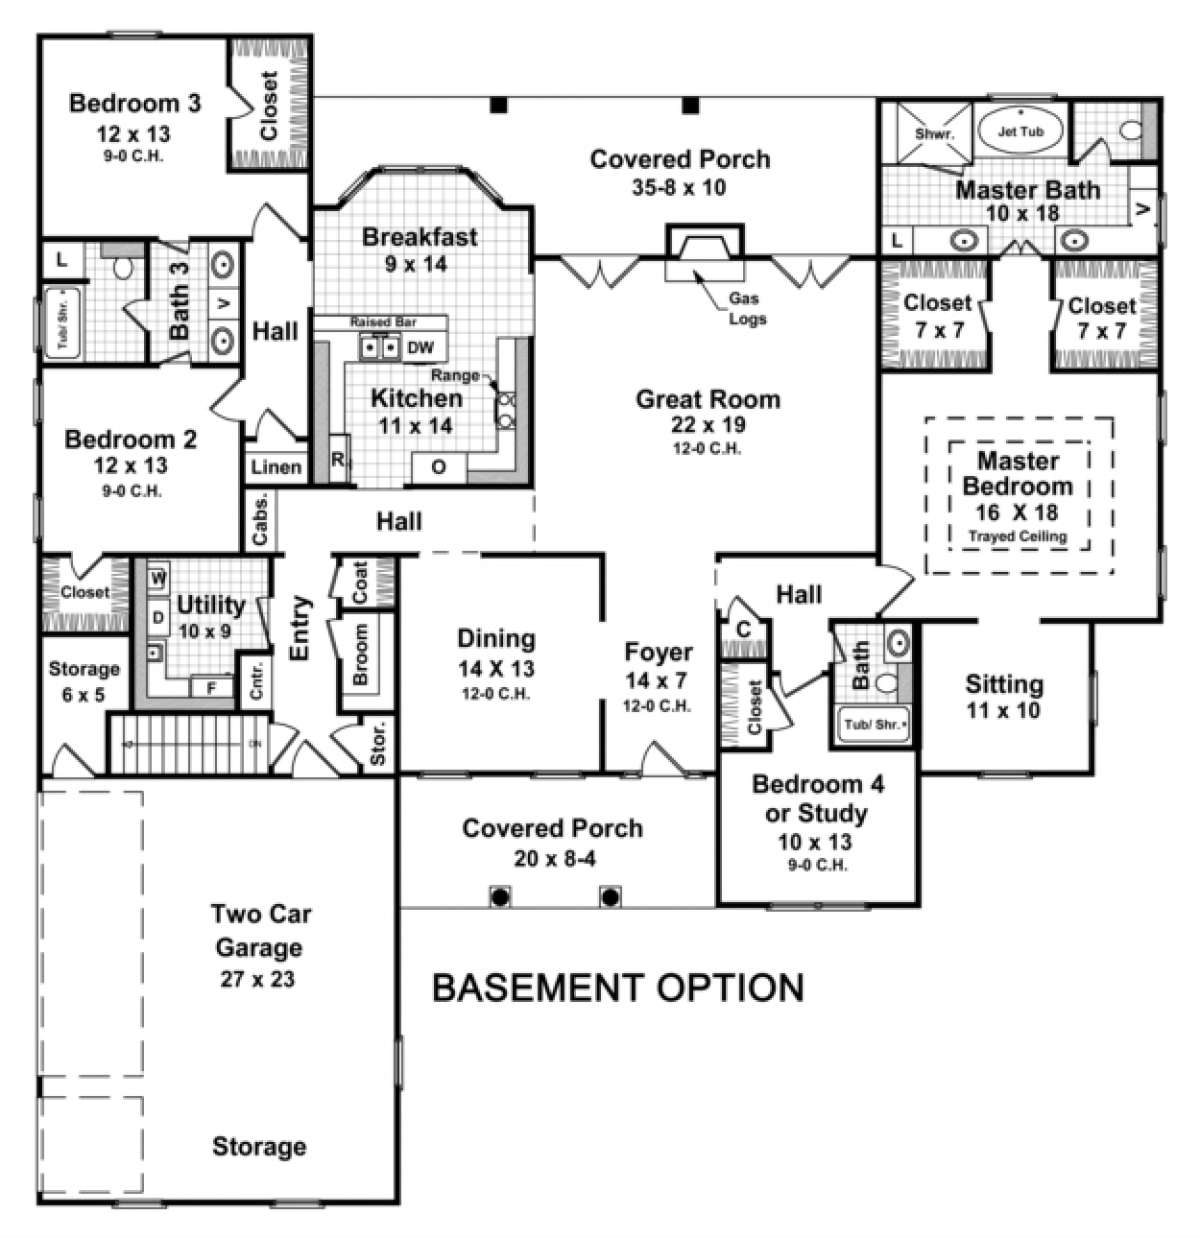 Basement Option Floor Plan for House Plan #348-00192